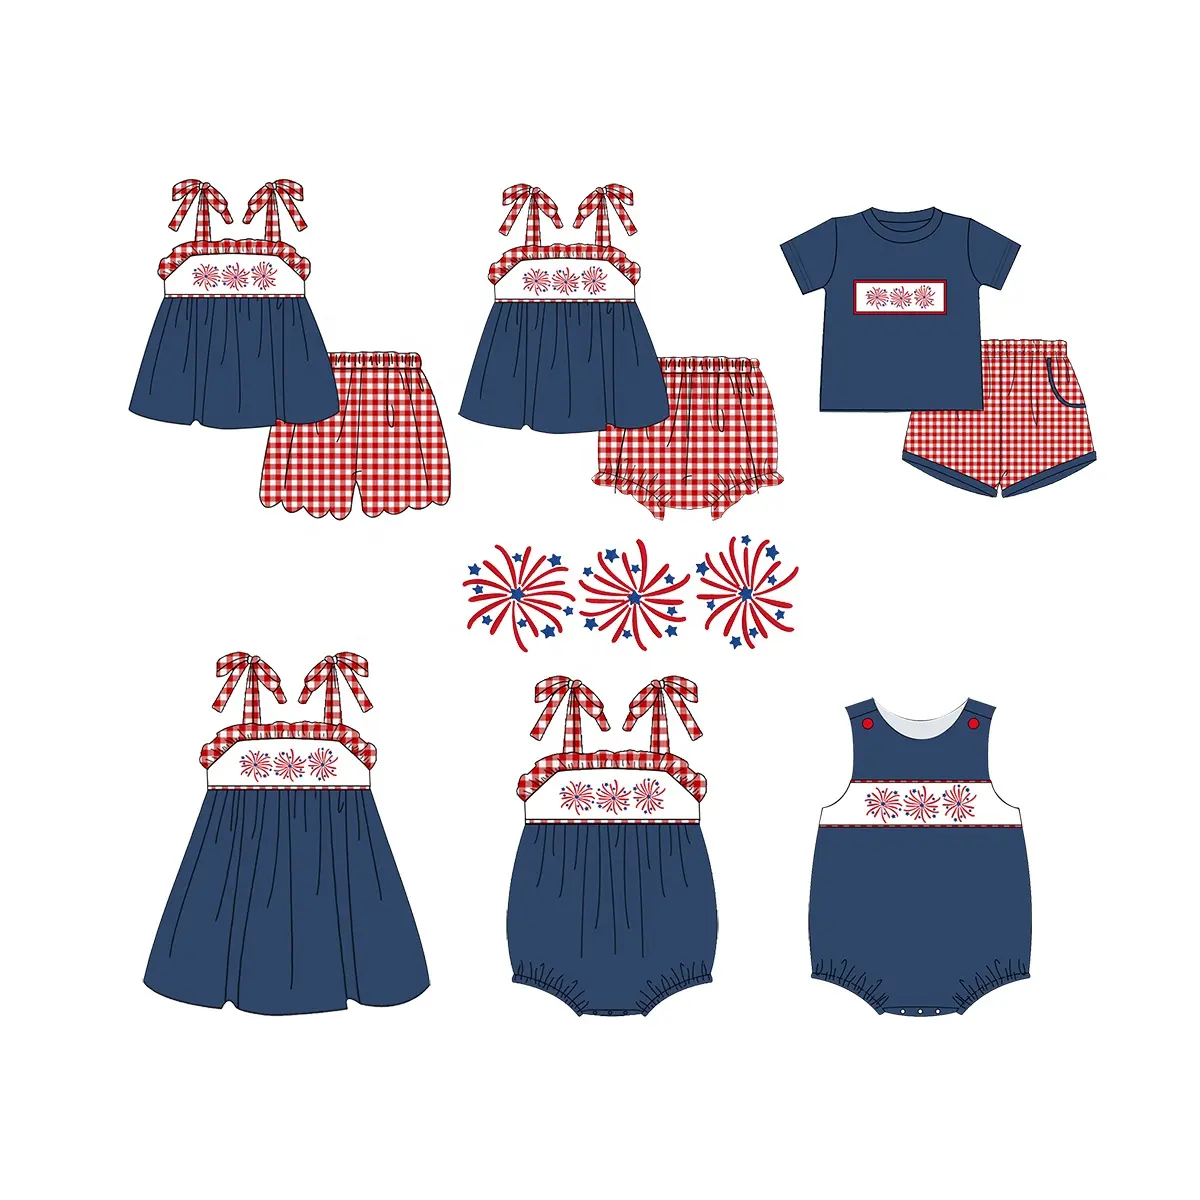 Puresun personnalisé 4 juillet enfants vêtements été printemps jour de l'indépendance bébé garçon vêtements avec broderie de feu d'artifice